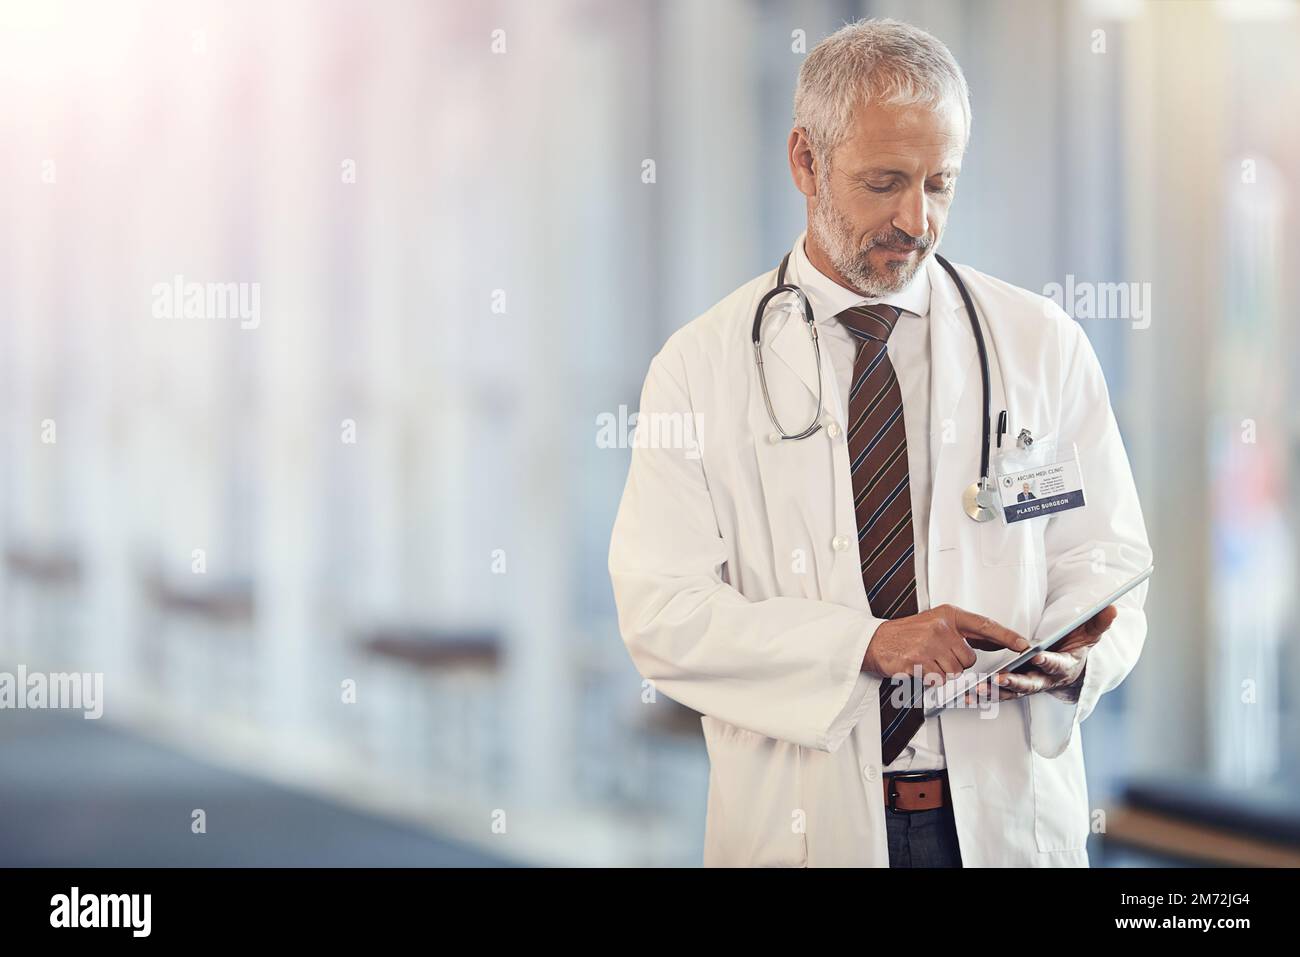 Lassen Sie Ihre medizinischen Probleme der Vergangenheit angehören. Ein reifer Arzt mit einem digitalen Tablet. Stockfoto